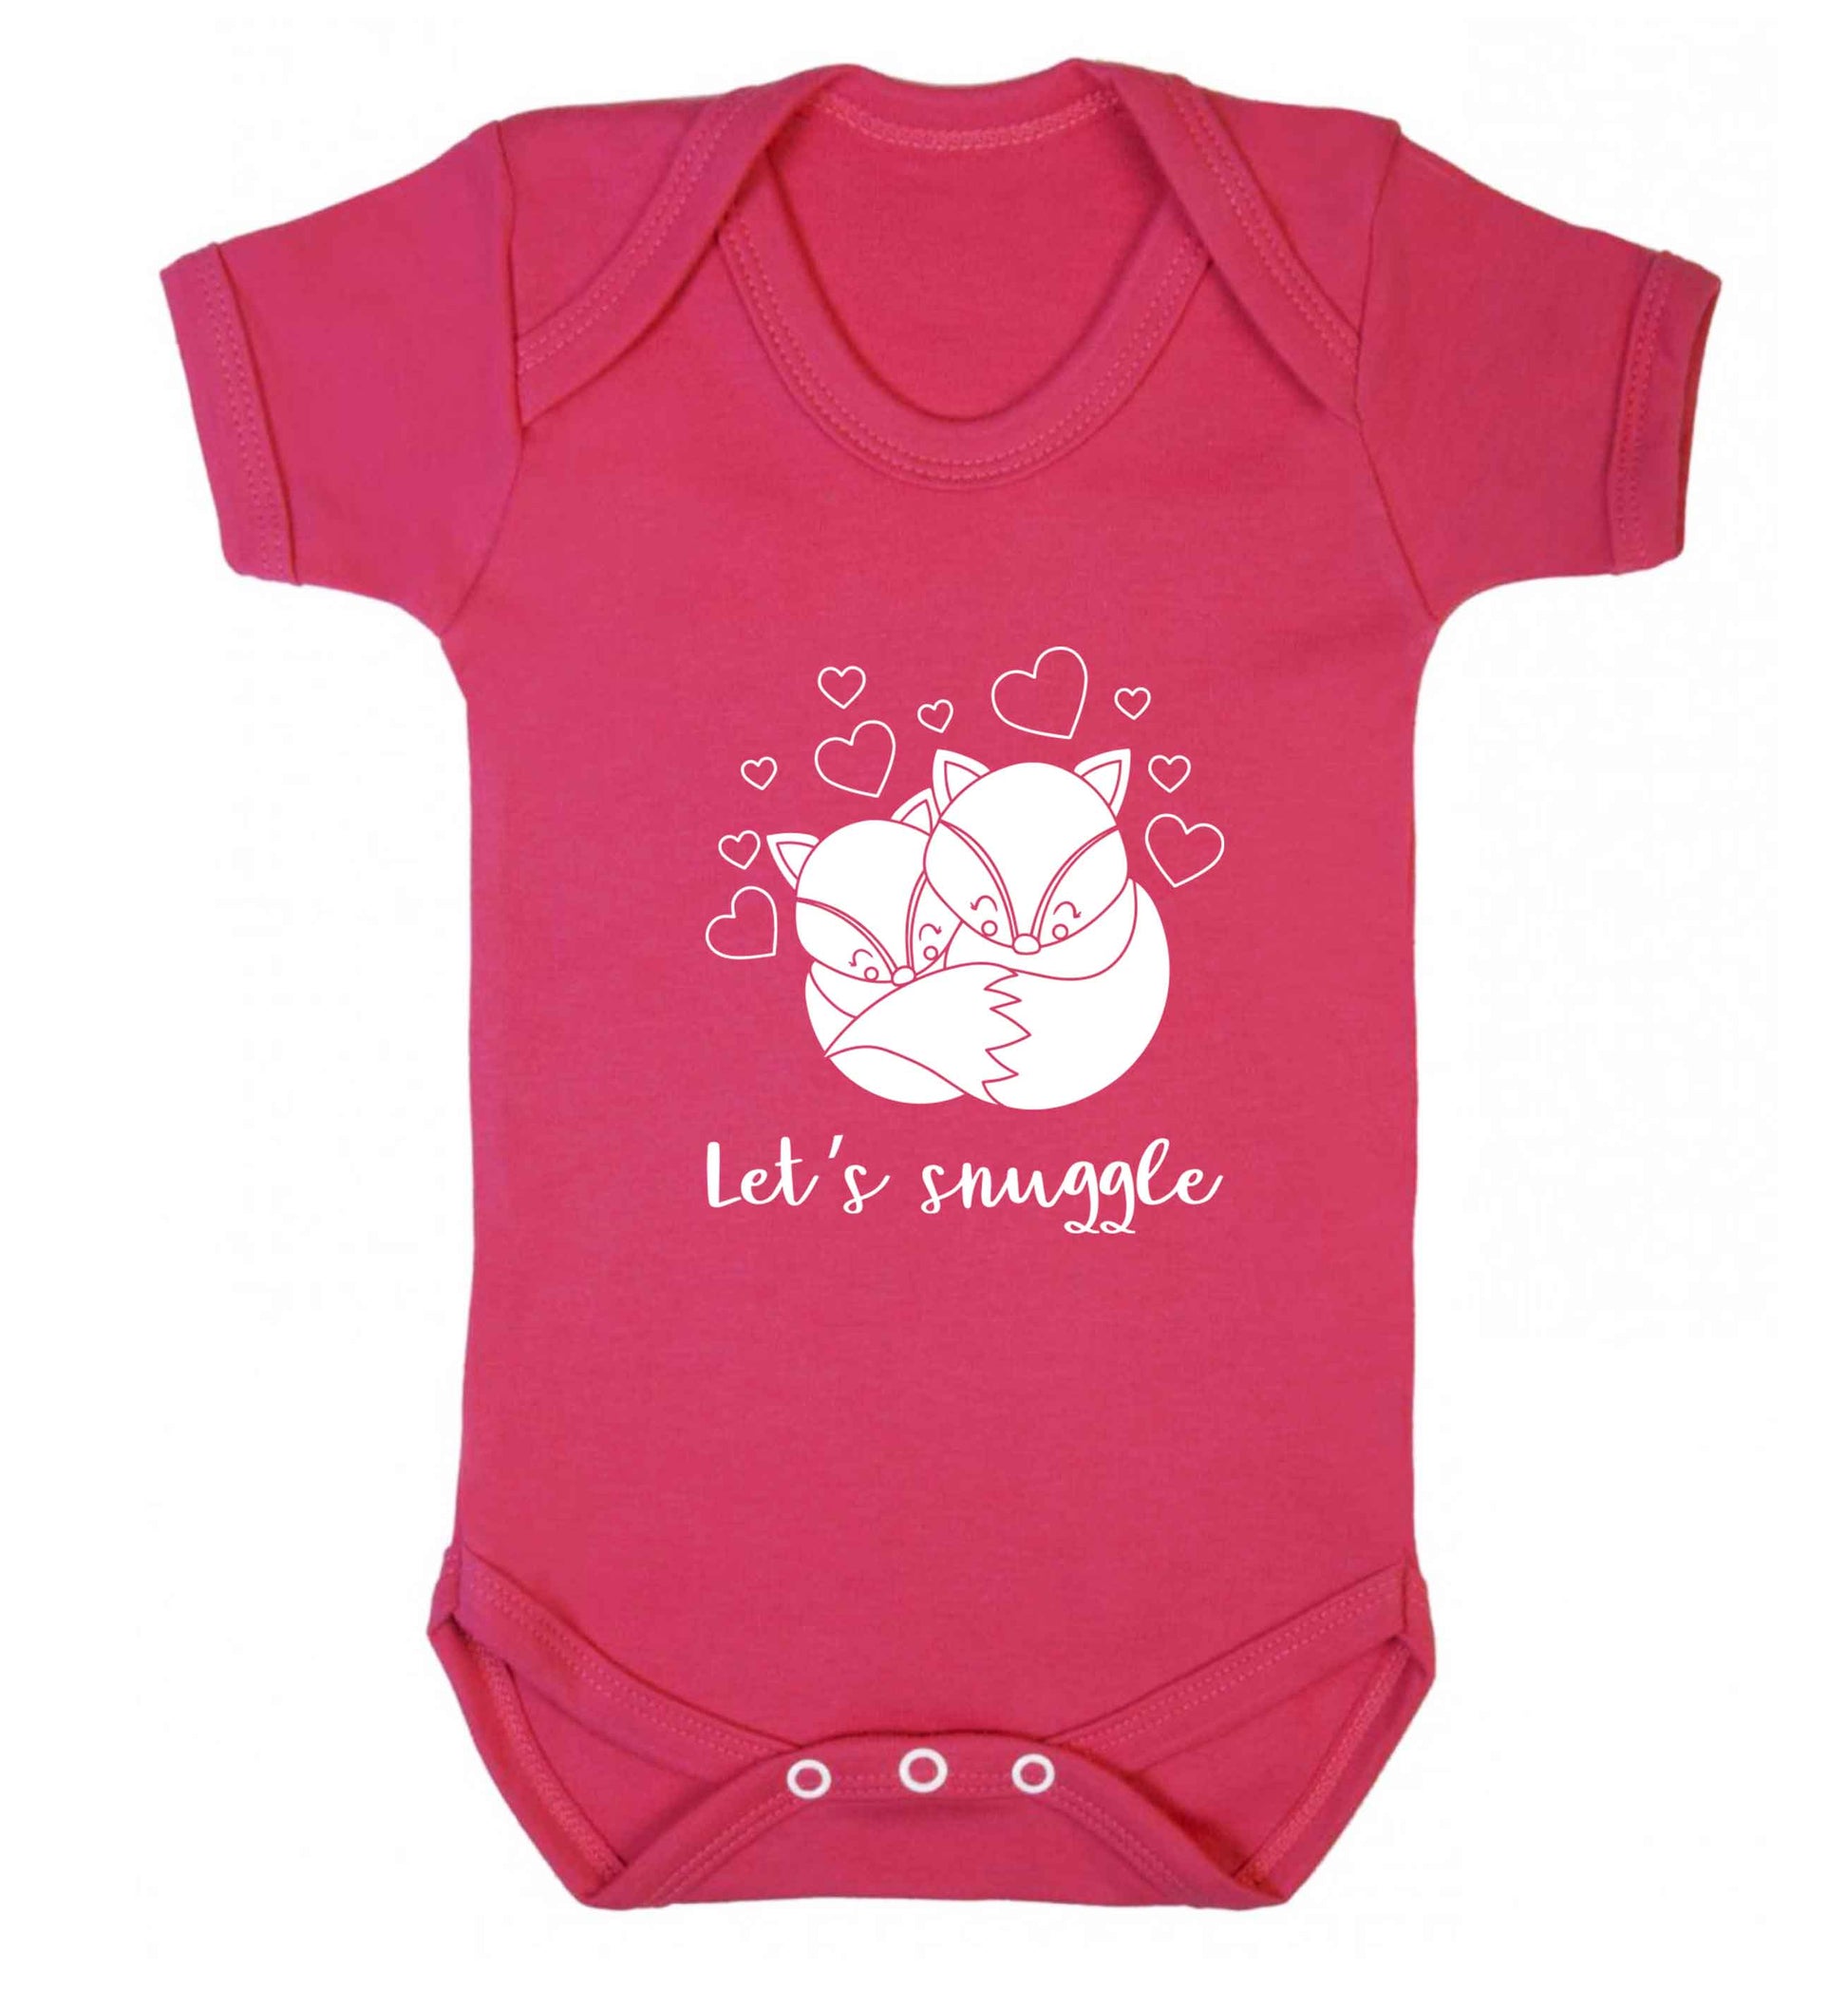 Let's snuggle baby vest dark pink 18-24 months